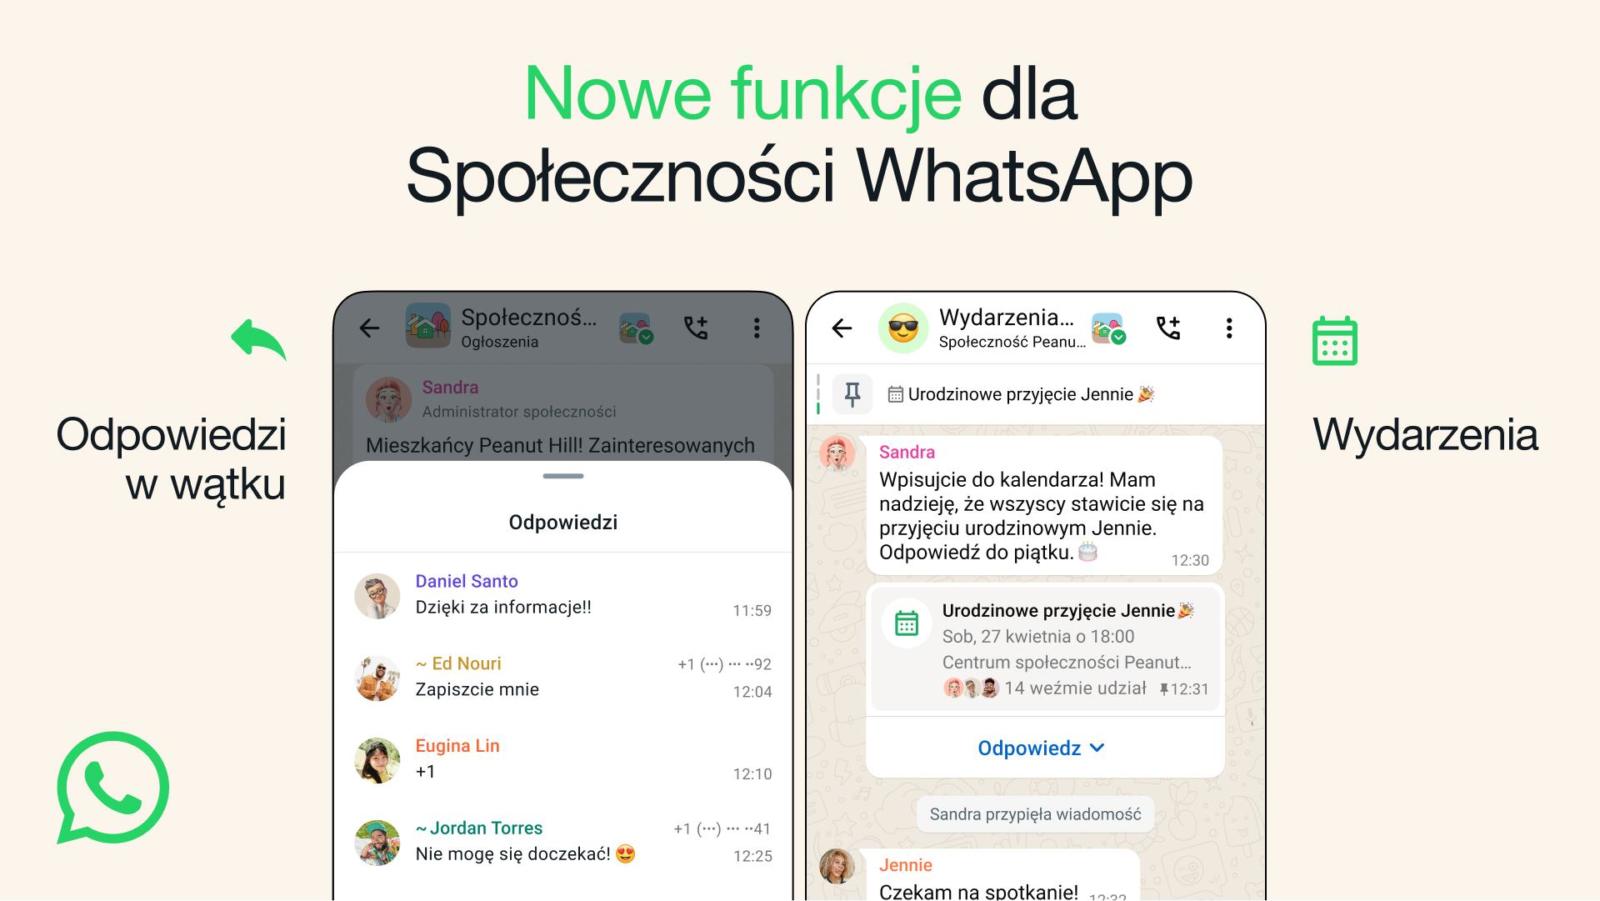 WhatsApp: nowości w sekcji społeczności: Wydarzenia i Odpowiedzi w Grupach z ogłoszeniami